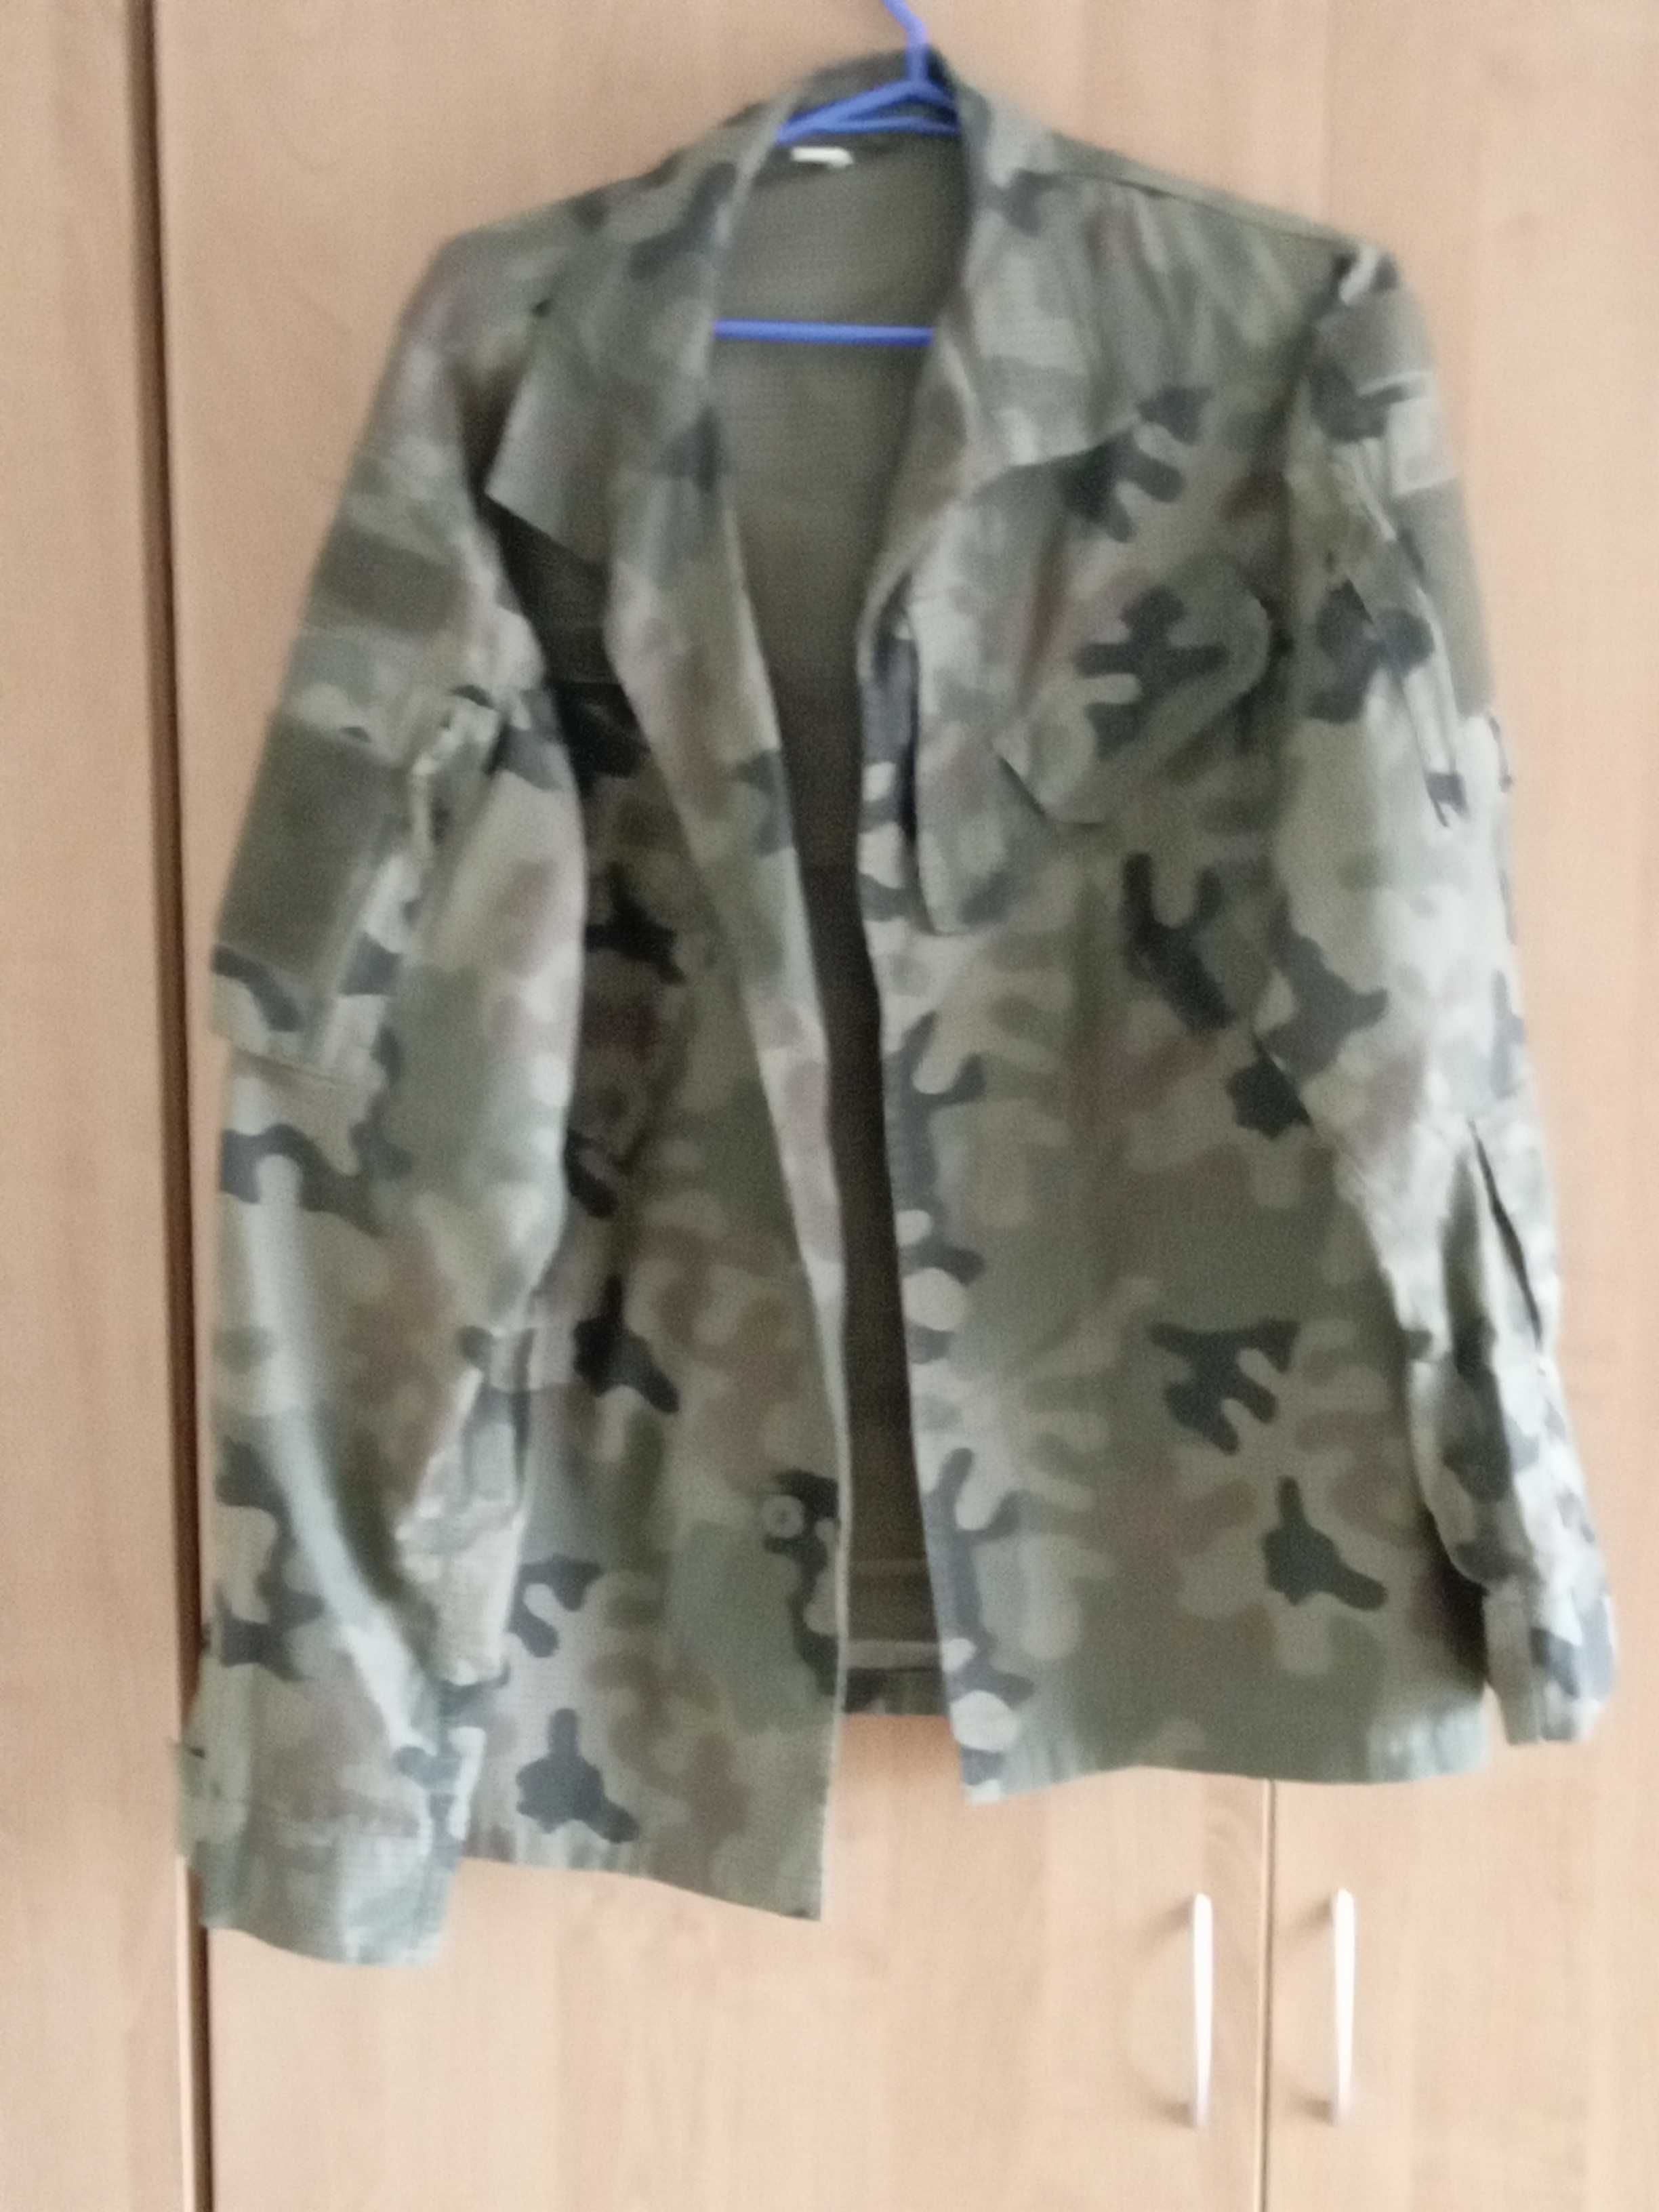 Bluza munduru wojskowego S/L